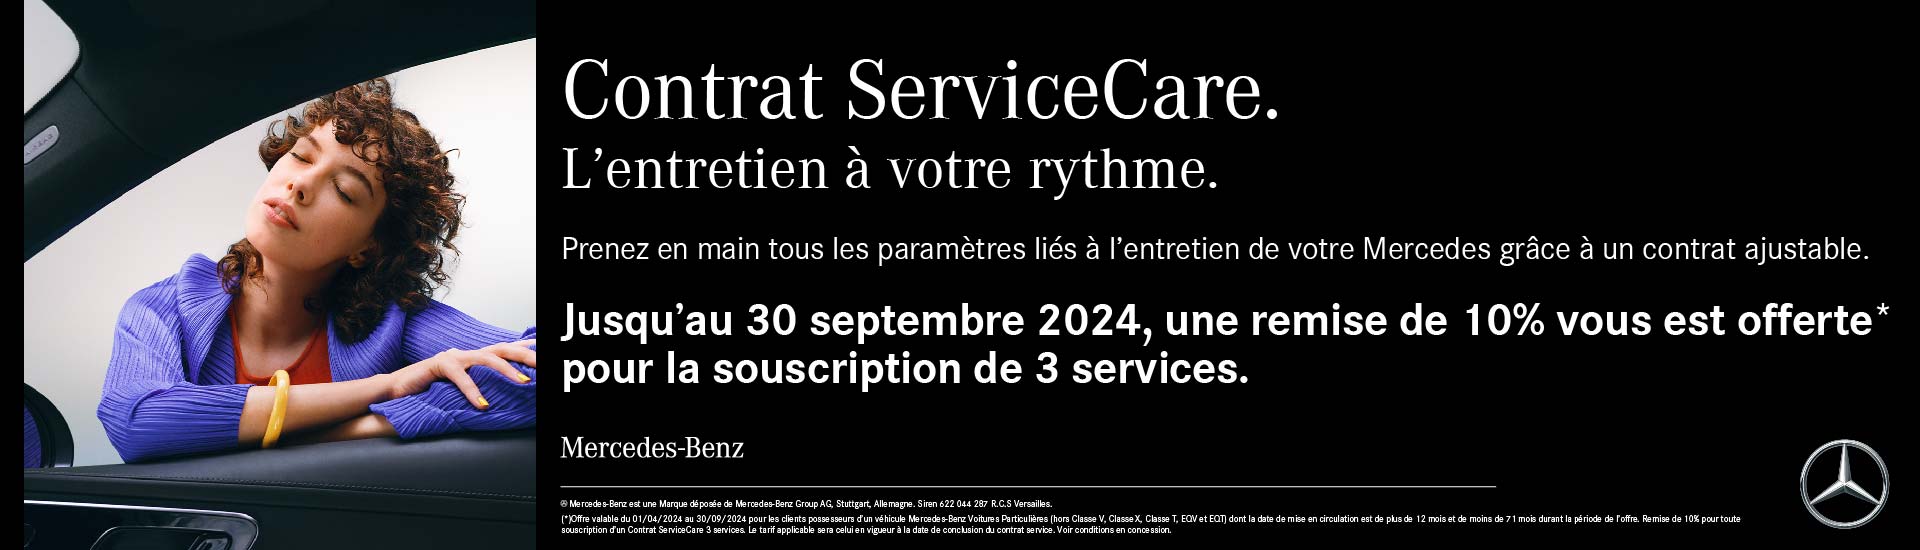 Contrat Service Care